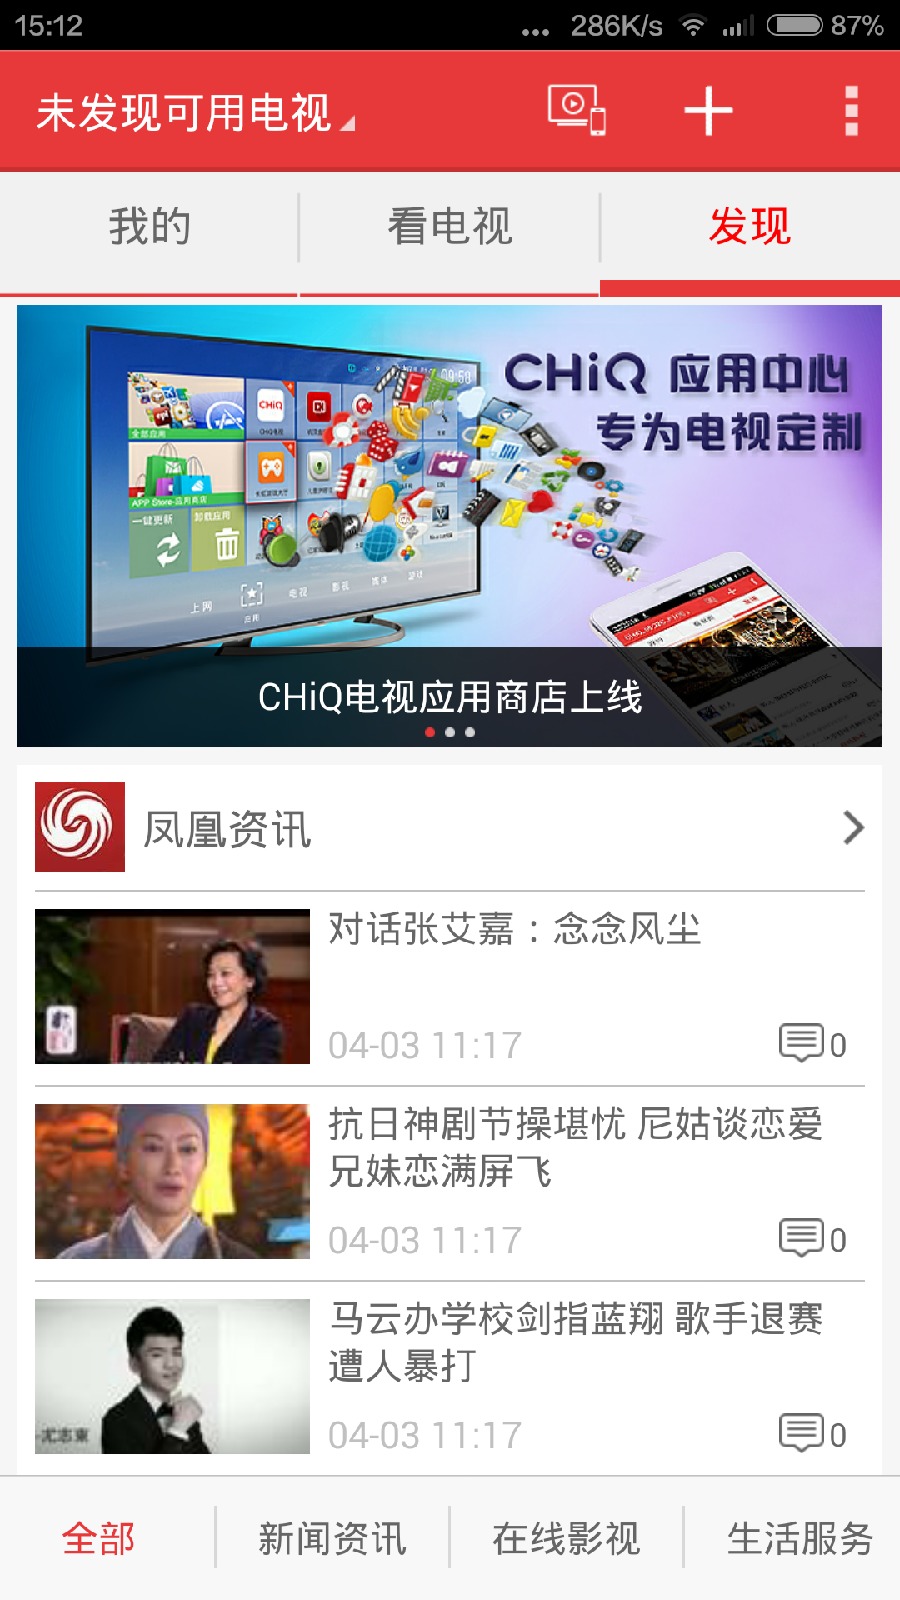 chiq电视手机遥控苹果版 v3.1.22 官方iphone版2